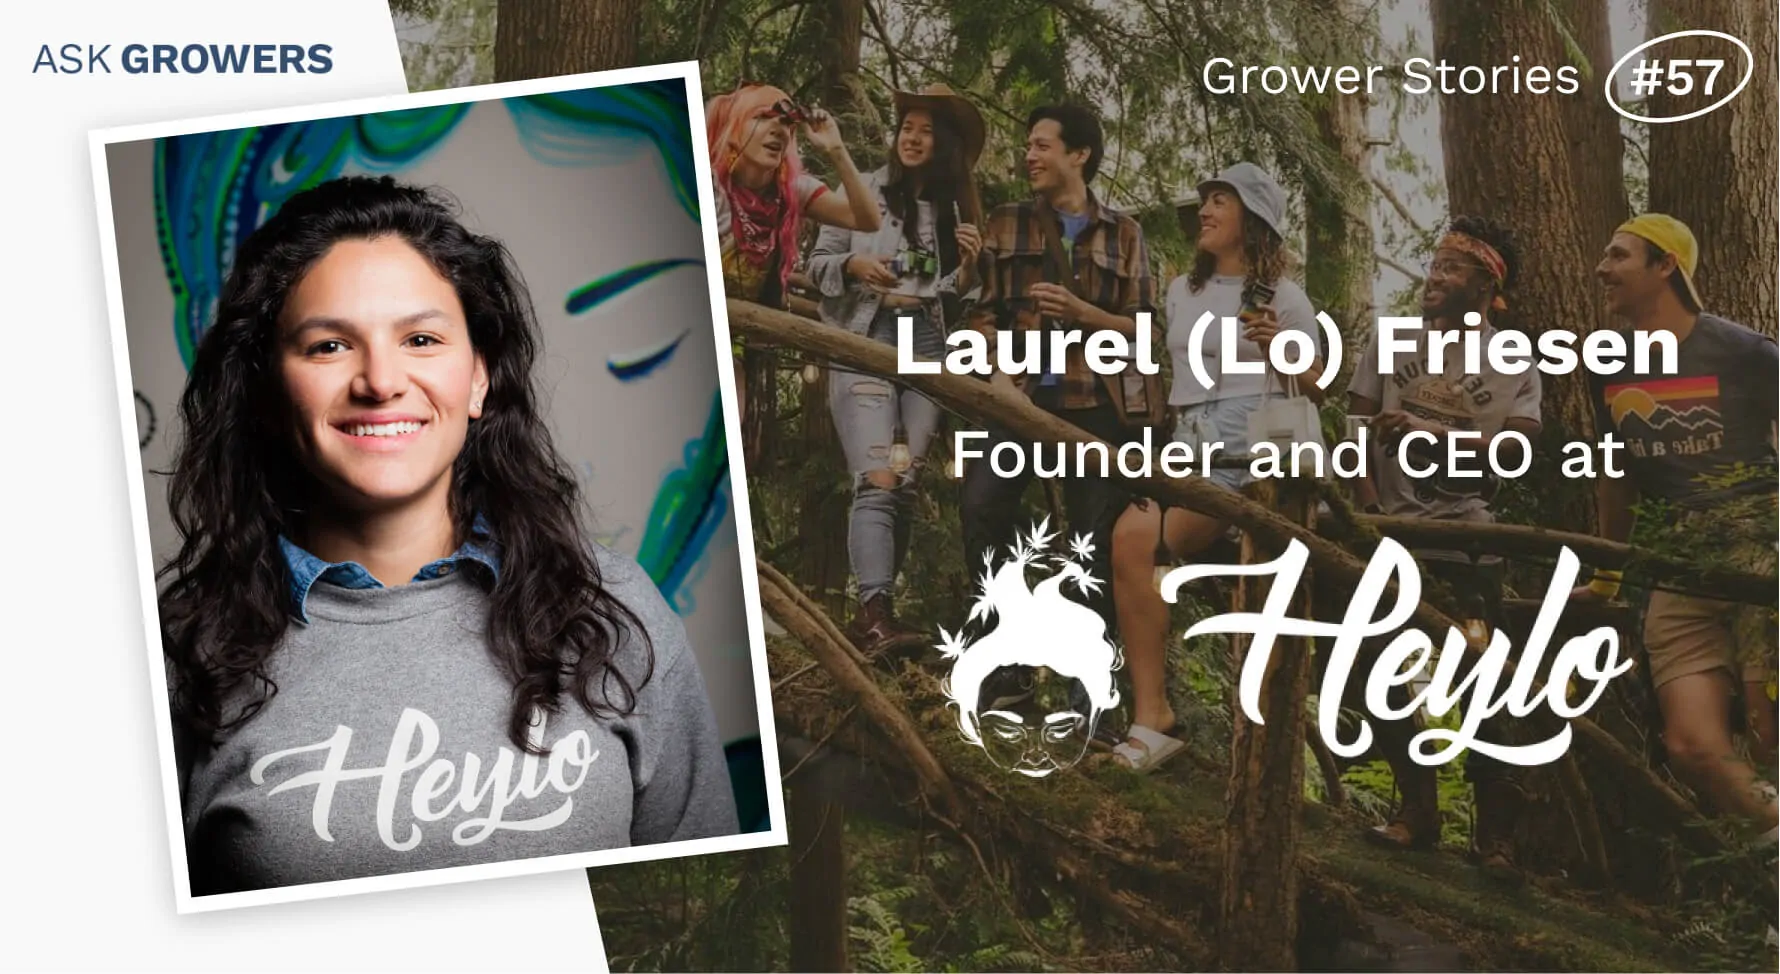 Grower Stories #57: Laurel (Lo) Friesen